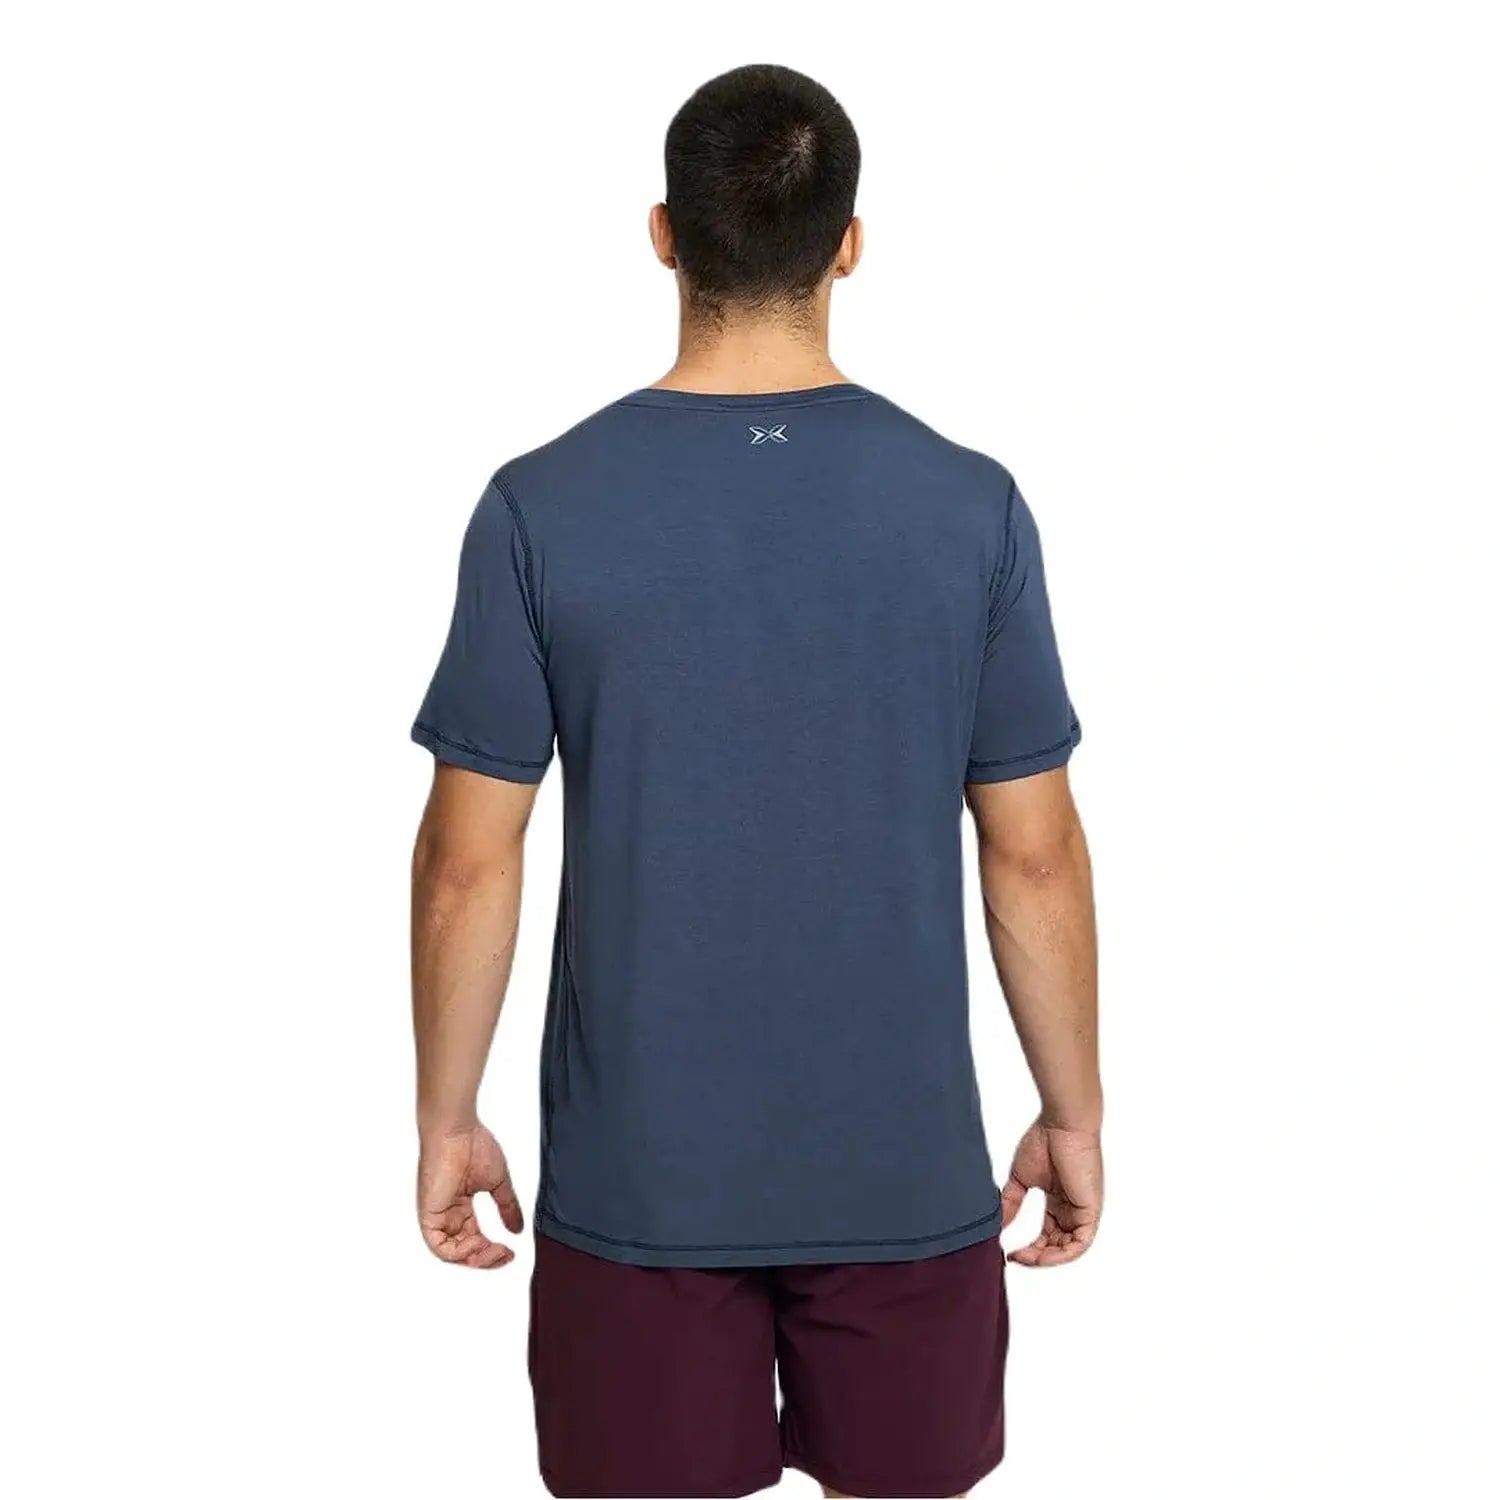 PicSil Herren Sport T-Shirt Kurzarm (Core) Blau kaufen bei HighPowered.ch